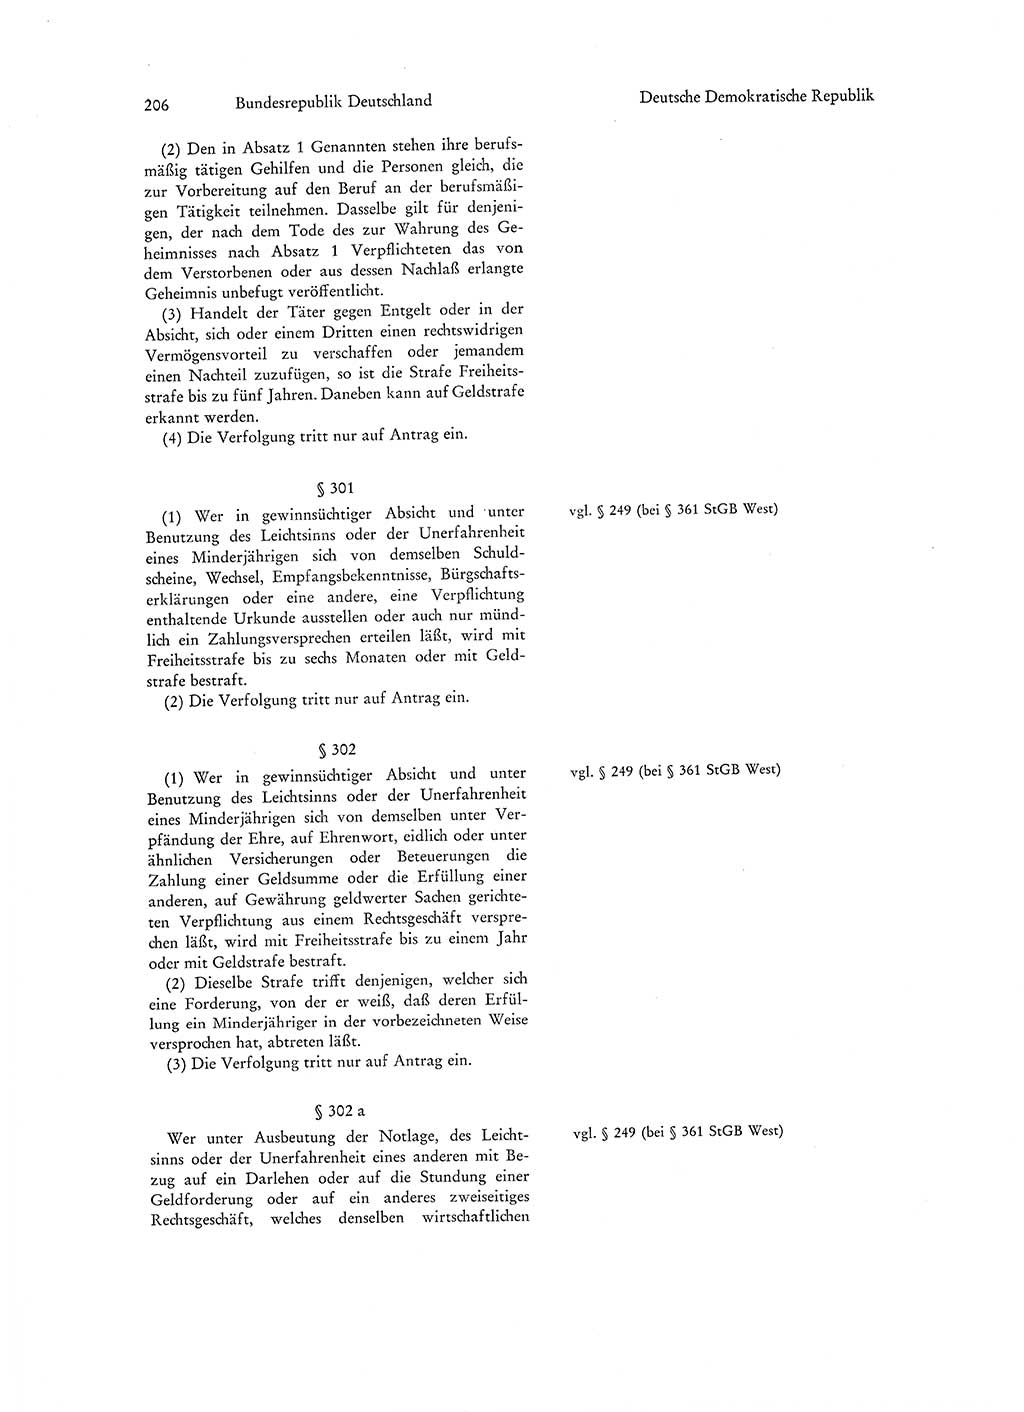 Strafgesetzgebung in Deutschland [Bundesrepublik Deutschland (BRD) und Deutsche Demokratische Republik (DDR)] 1972, Seite 206 (Str.-Ges. Dtl. StGB BRD DDR 1972, S. 206)